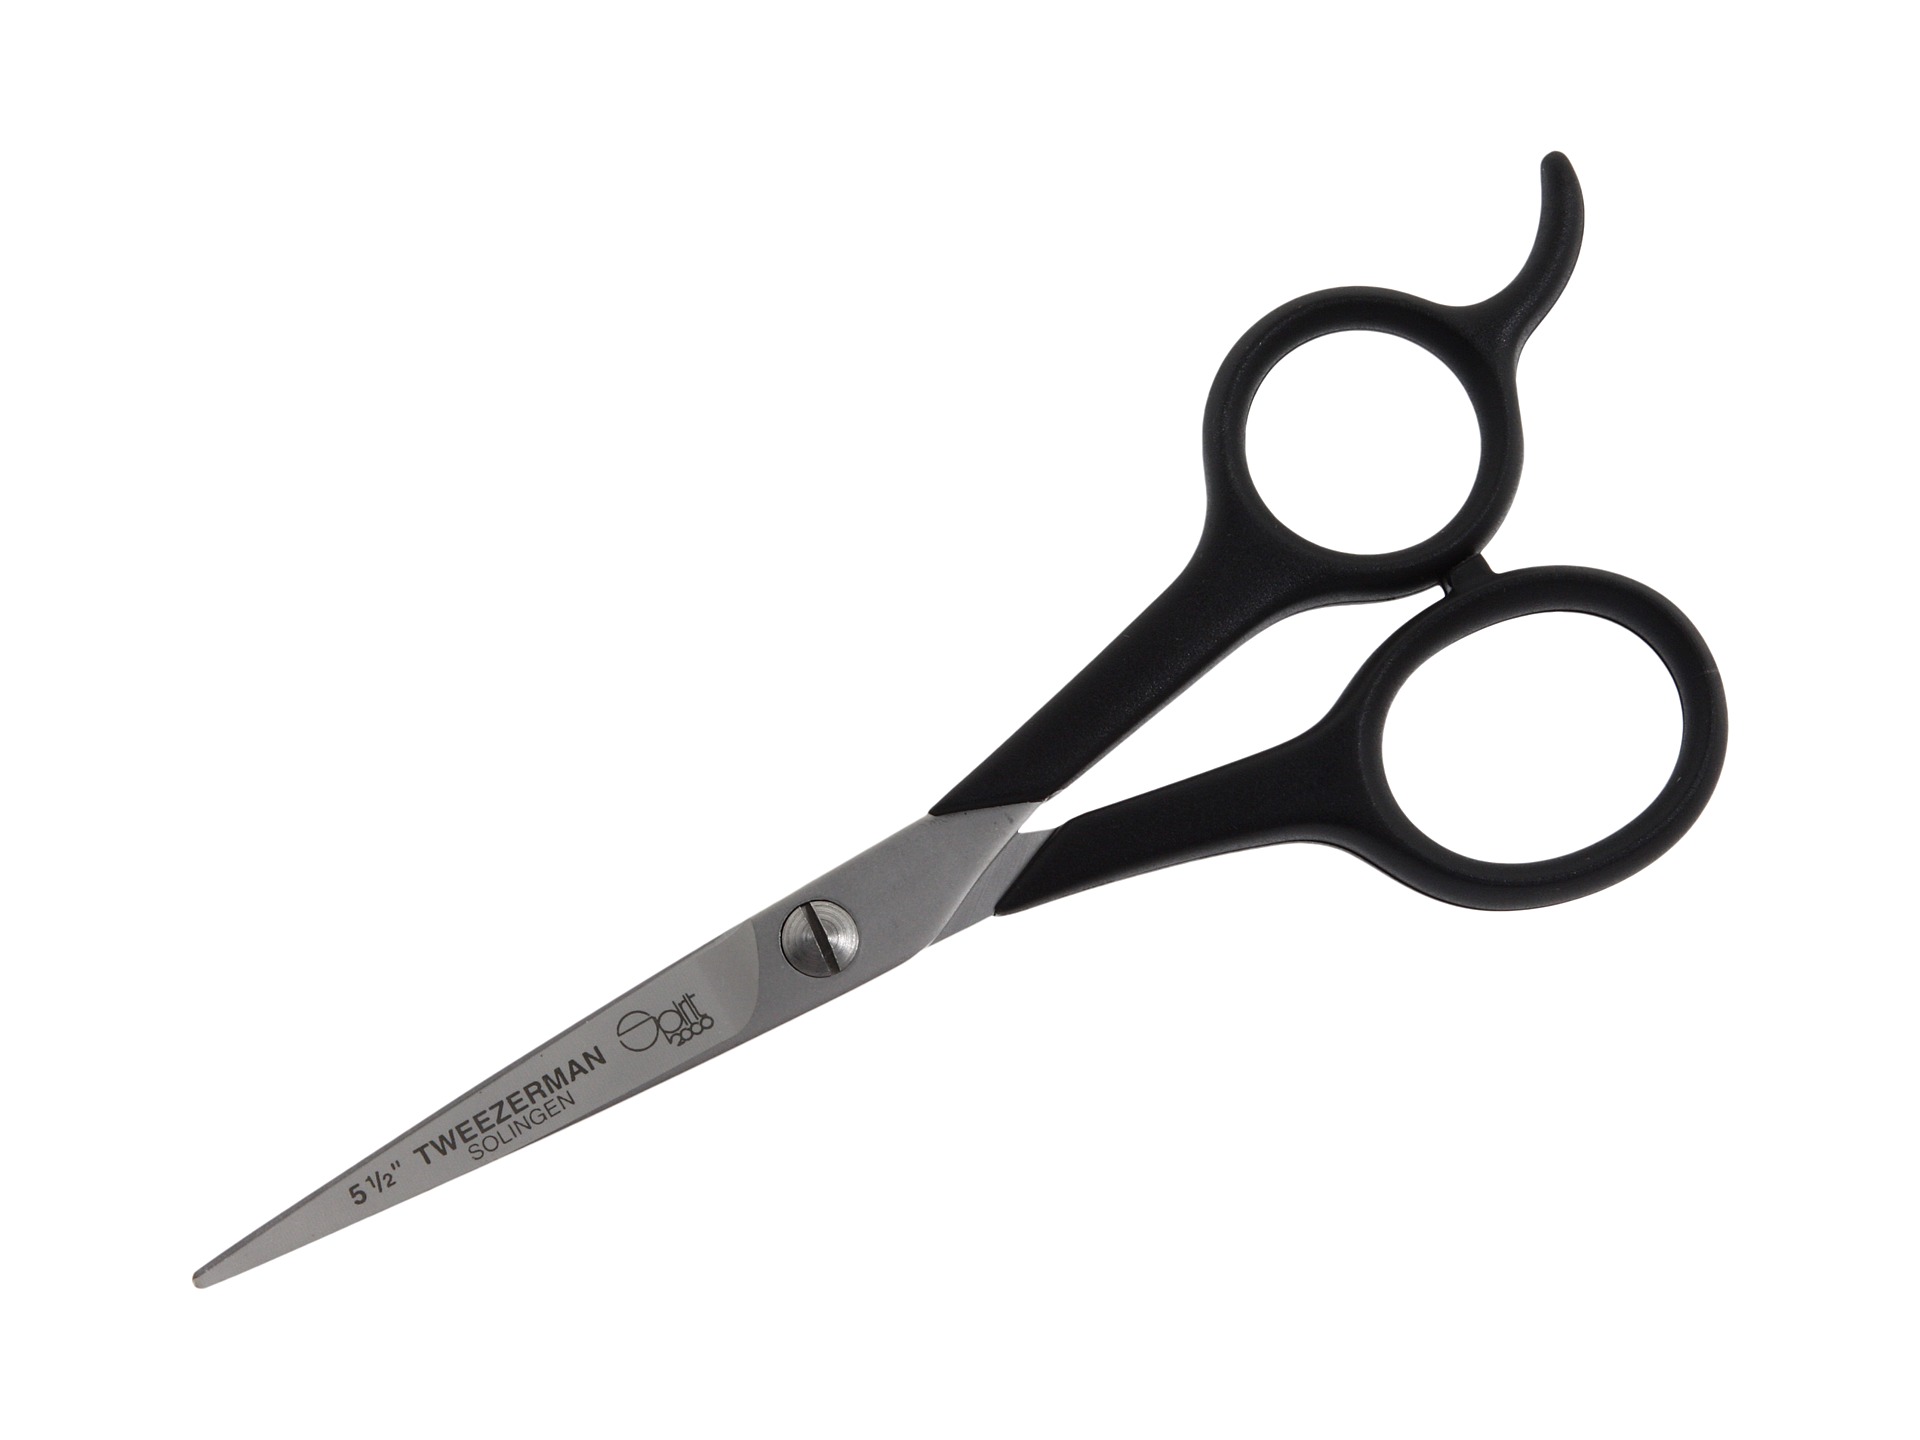 Scissors scissor clip art free clipart images 3